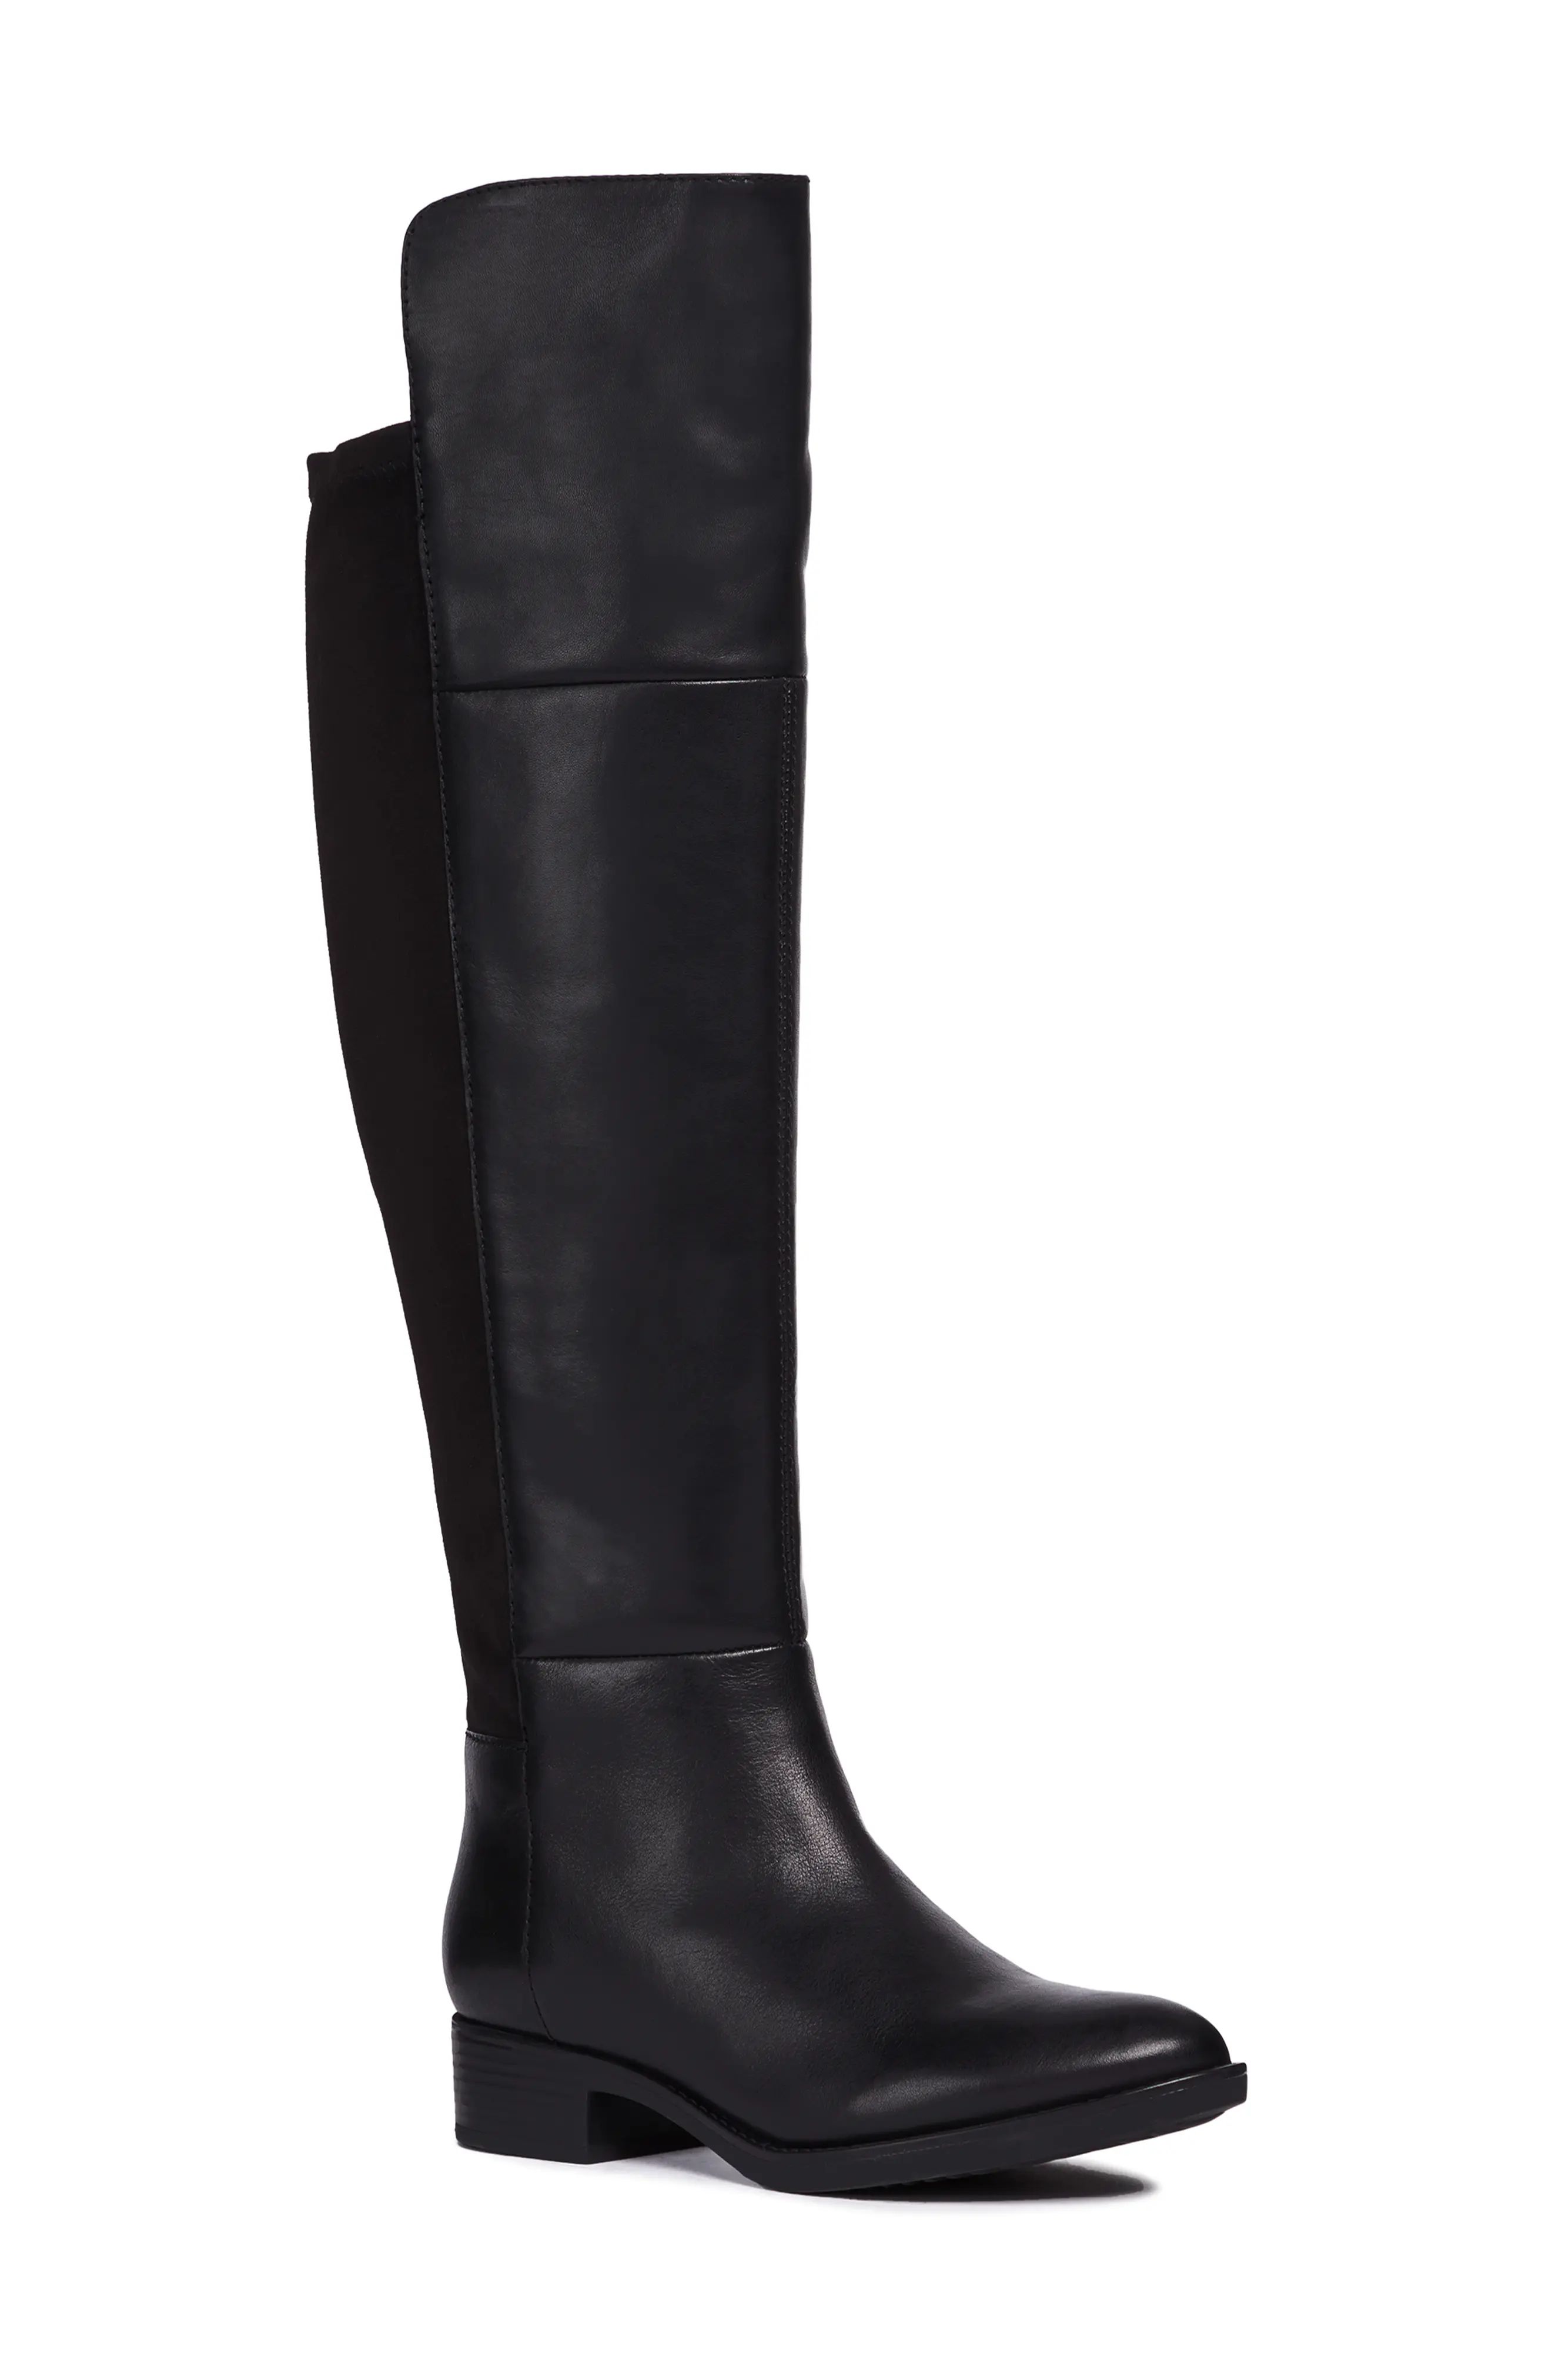 Women's Geox Felicity Knee High Boot, Size 5US / 35EU - Black | Nordstrom